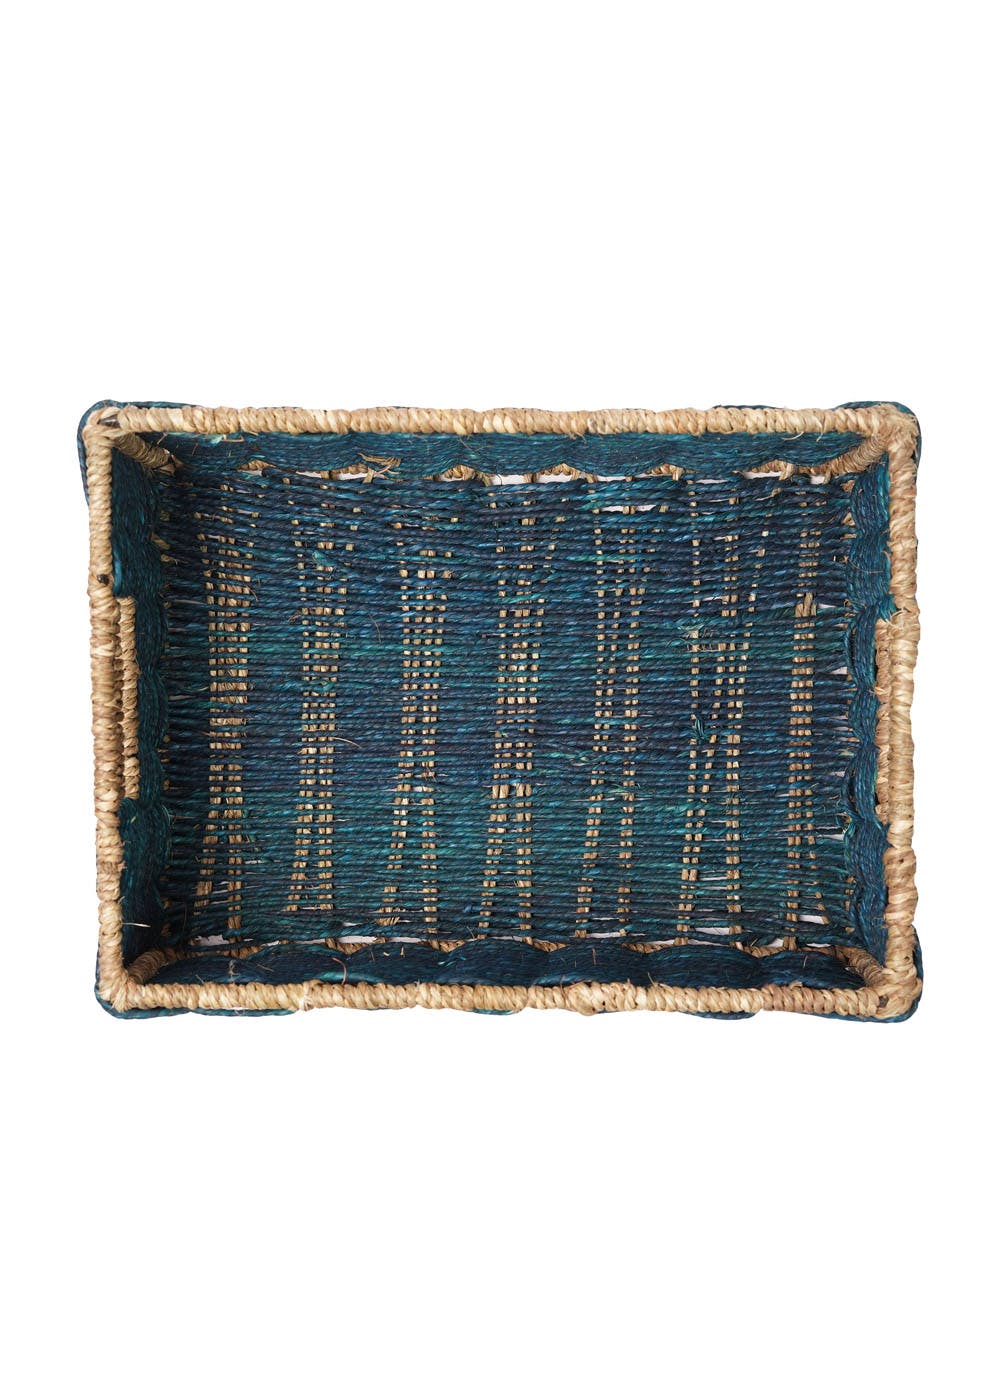 Handmade Sabai Grass Towel Basket - Large